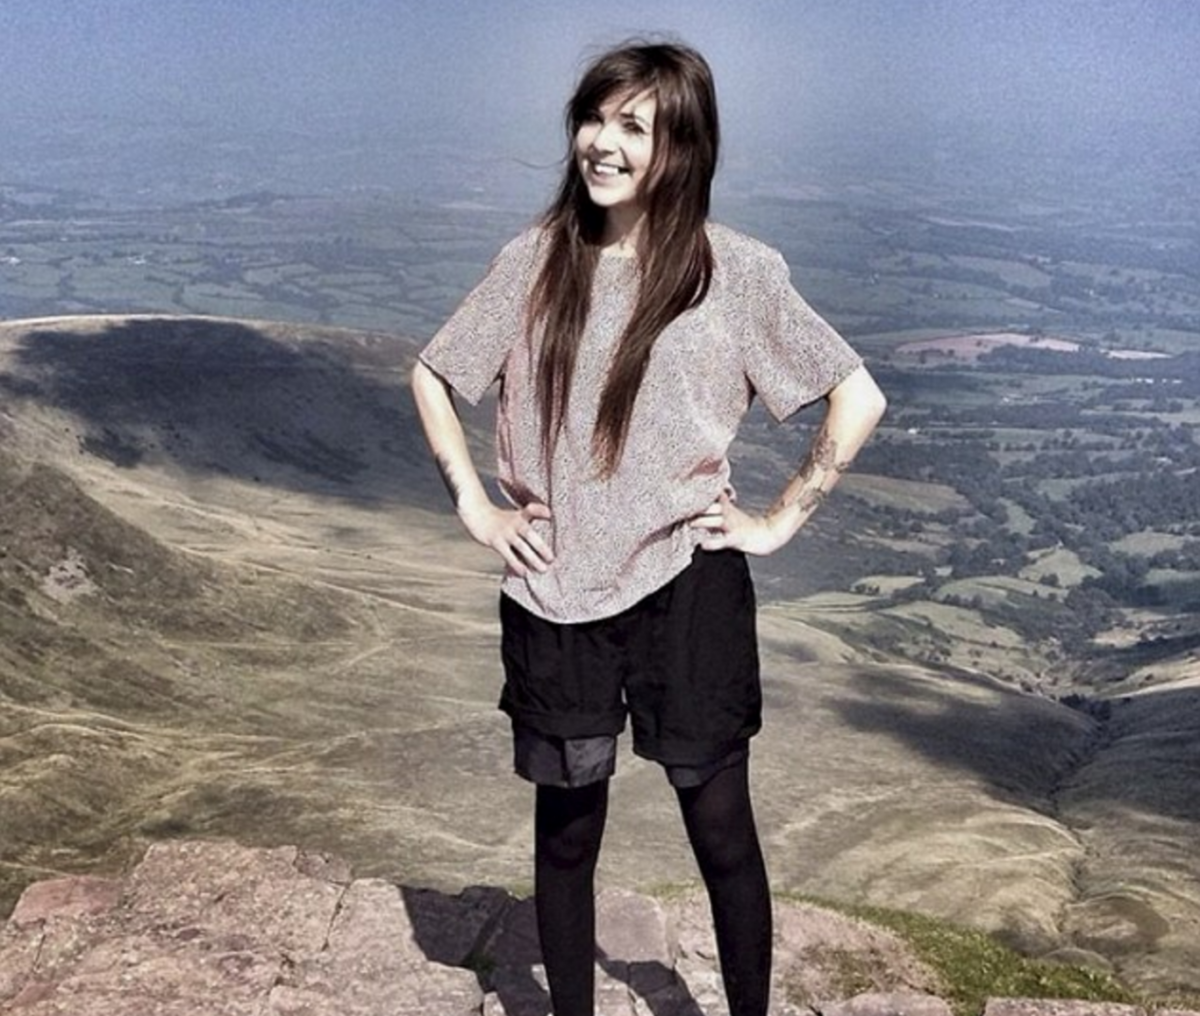 Sarah Albone climbs Ben Nevis in Britain